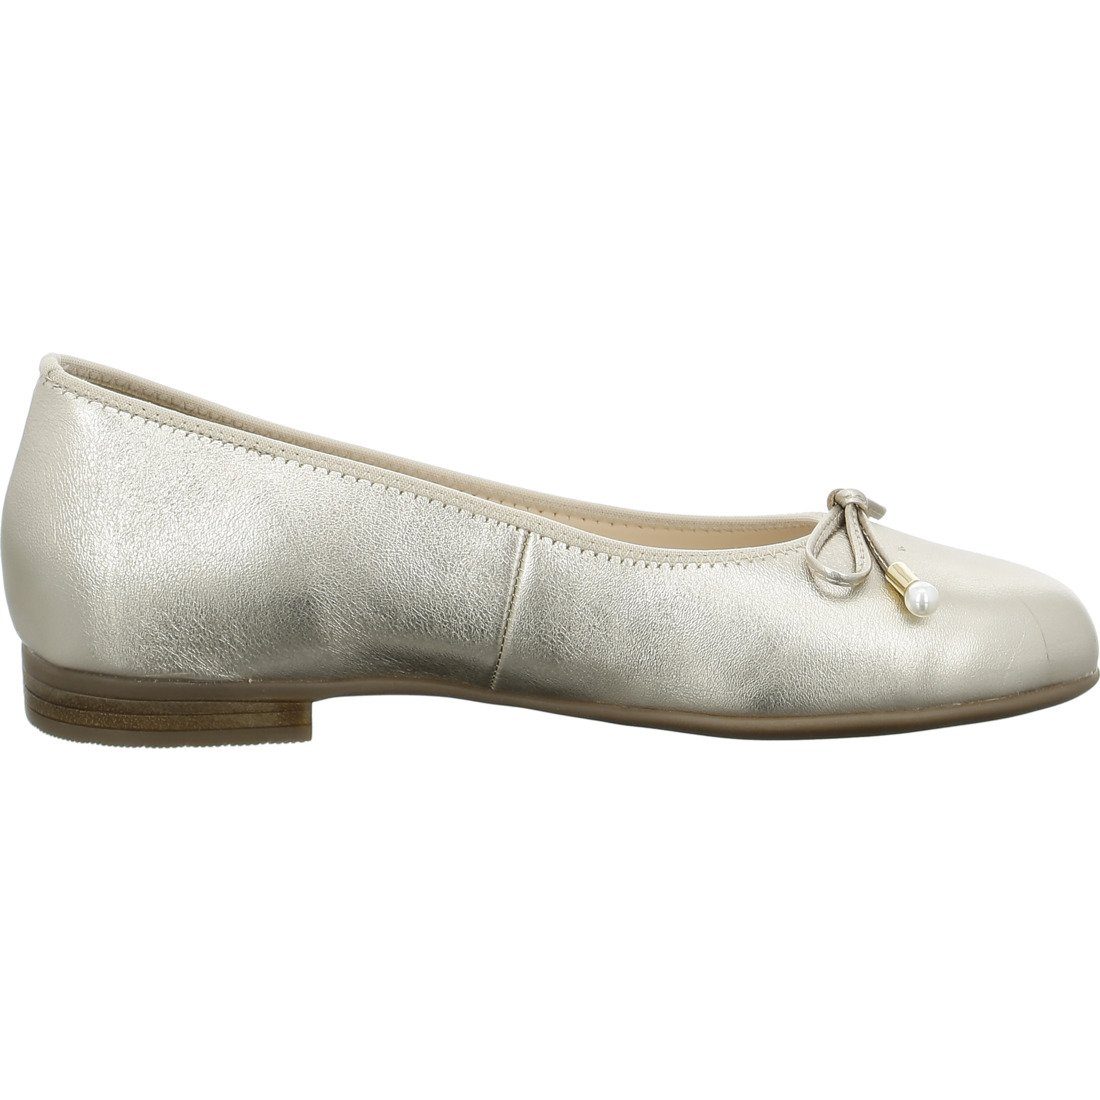 Ara Ara Schuhe, Ballerina Damen Rauleder - 048110 Ballerina beige Sardinia